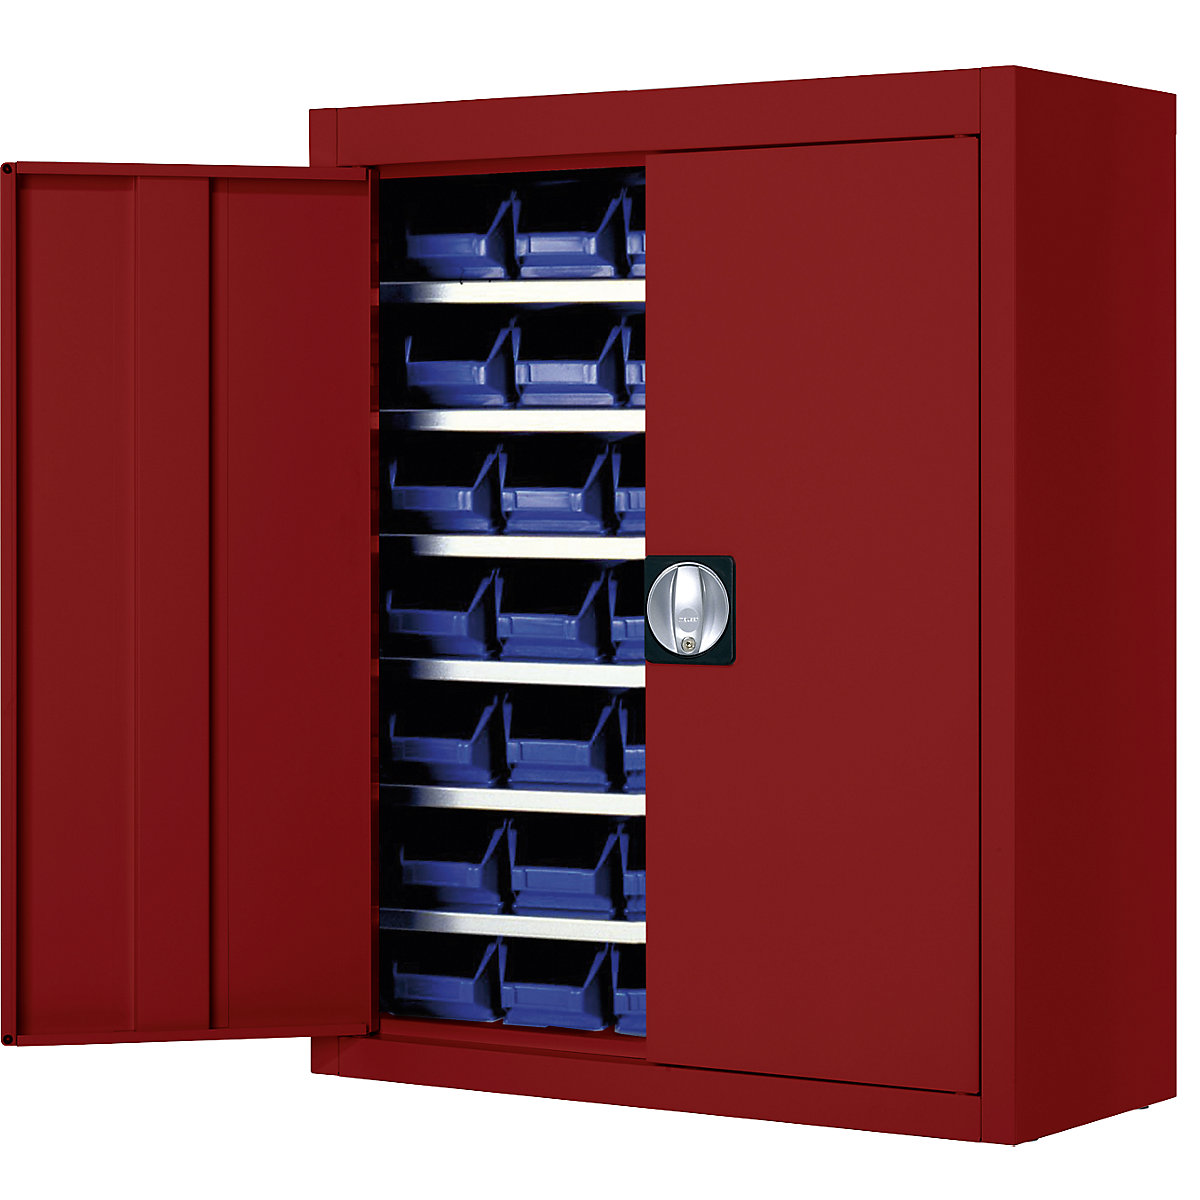 Magazijnkast met magazijnbakken – mauser, h x b x d = 820 x 680 x 280 mm, eenkleurig, rood, 42 bakken, vanaf 3 stuks-6